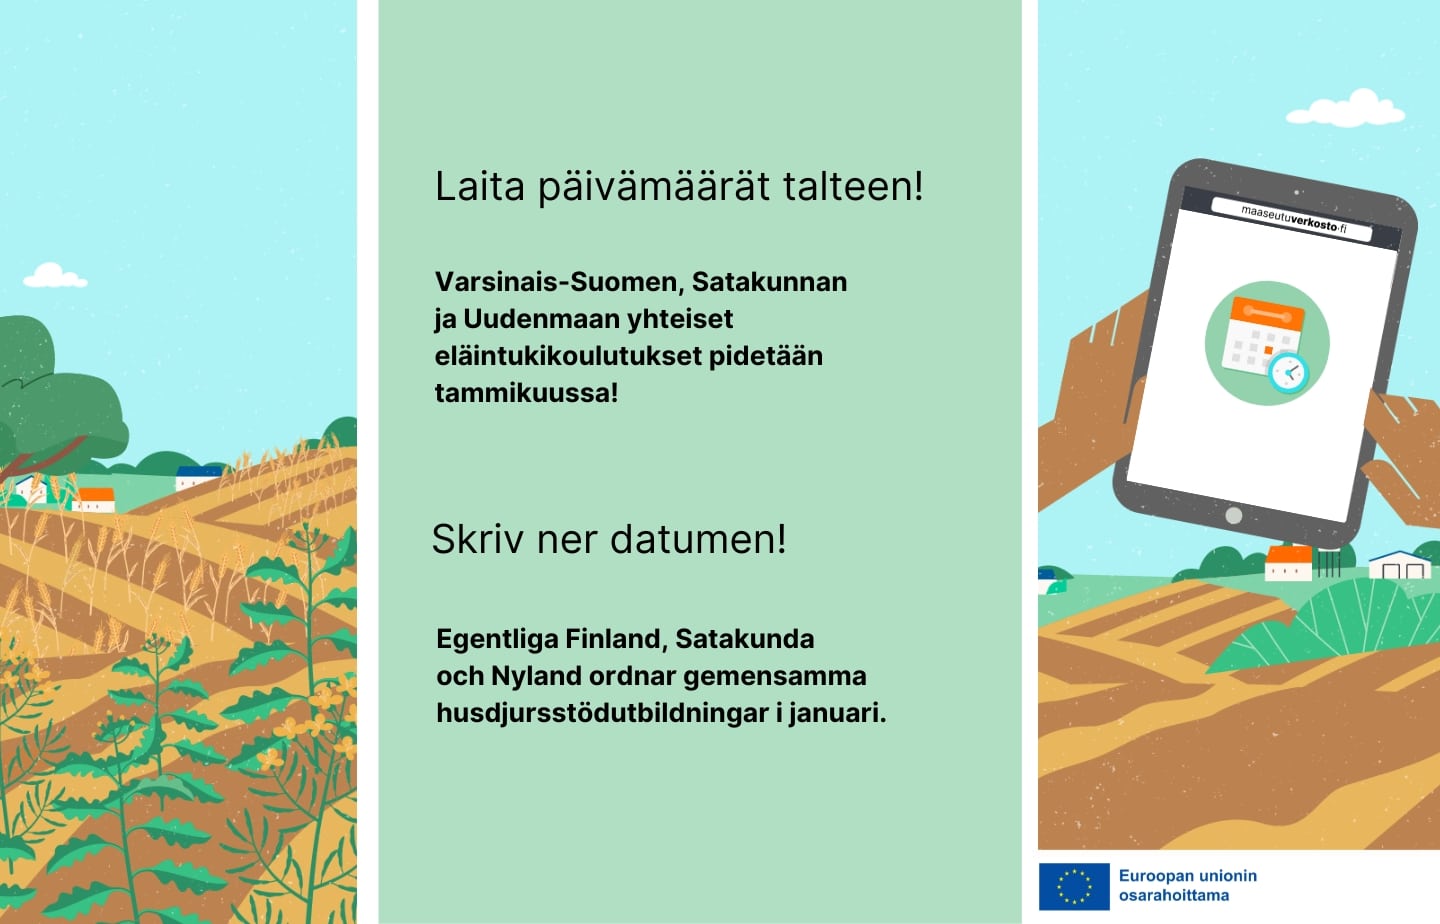 Vihreällä pohjalla teksti: Laita päivämäärät talteen. Varsinais-Suomen, Satakunnan ja Uudenmaan yhteiset eläintukikoulutukset pidetään tammikuussa.